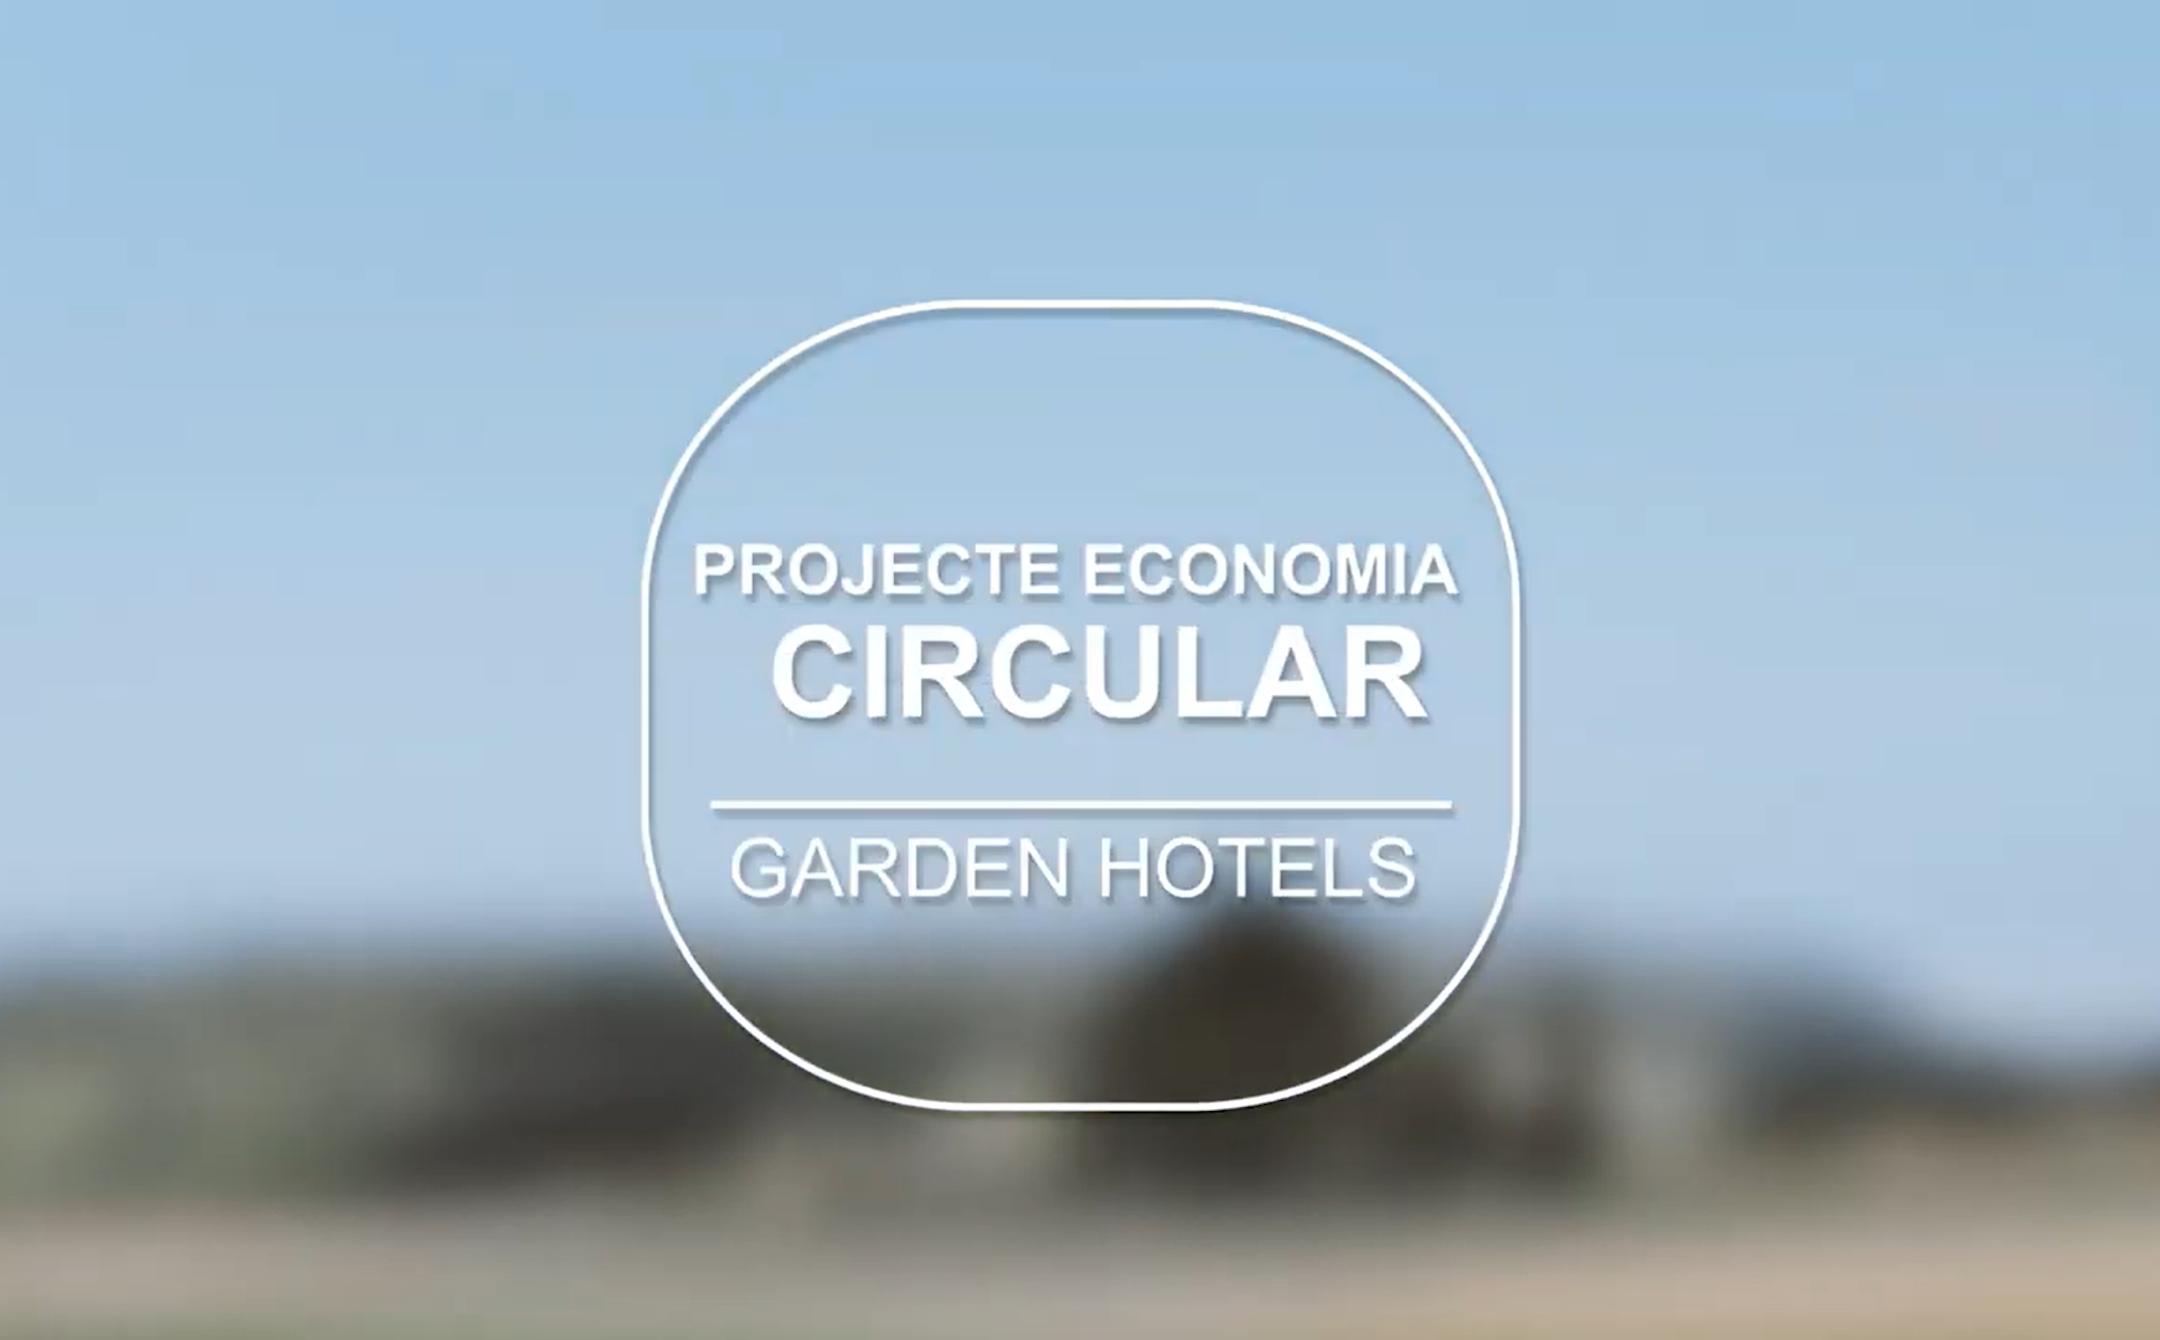 Proyecto Economía Circular Garden Hotels